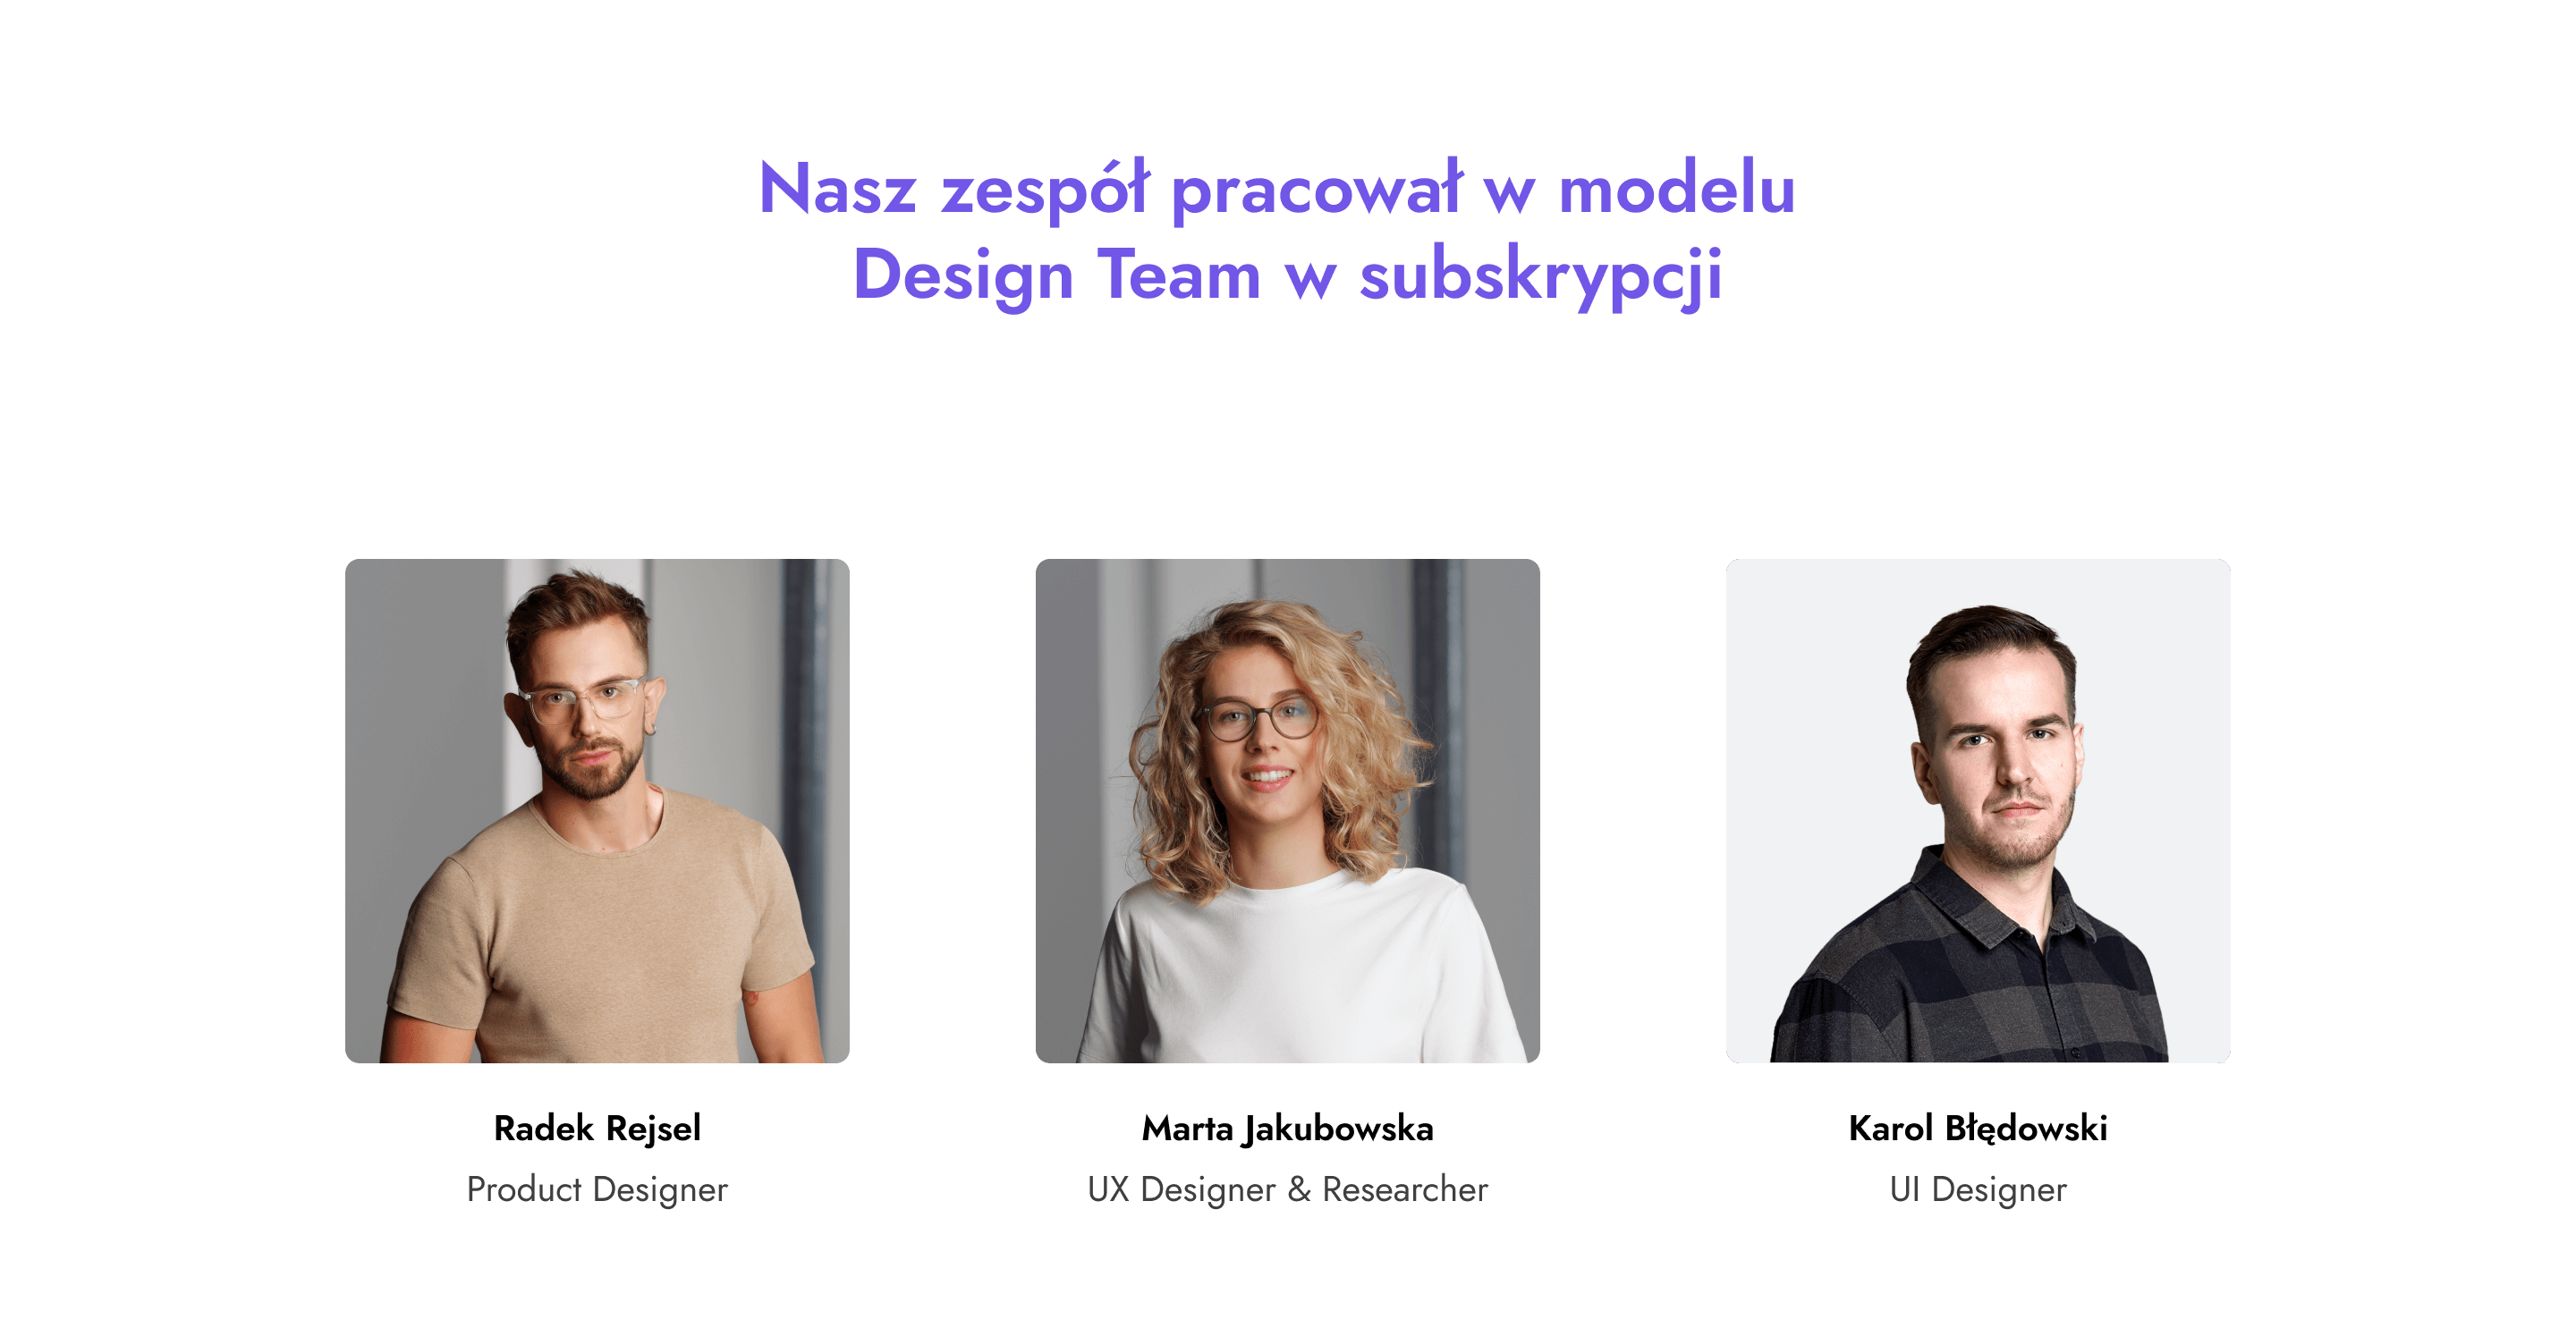 Skład naszego zespołu pracującego w modelu Design Team w subskrypcji: Radek Rejsel - Produkt Designer, Marta Jakubowska - UX Designer & Researcher, Karol Błędowski - UI Designer.